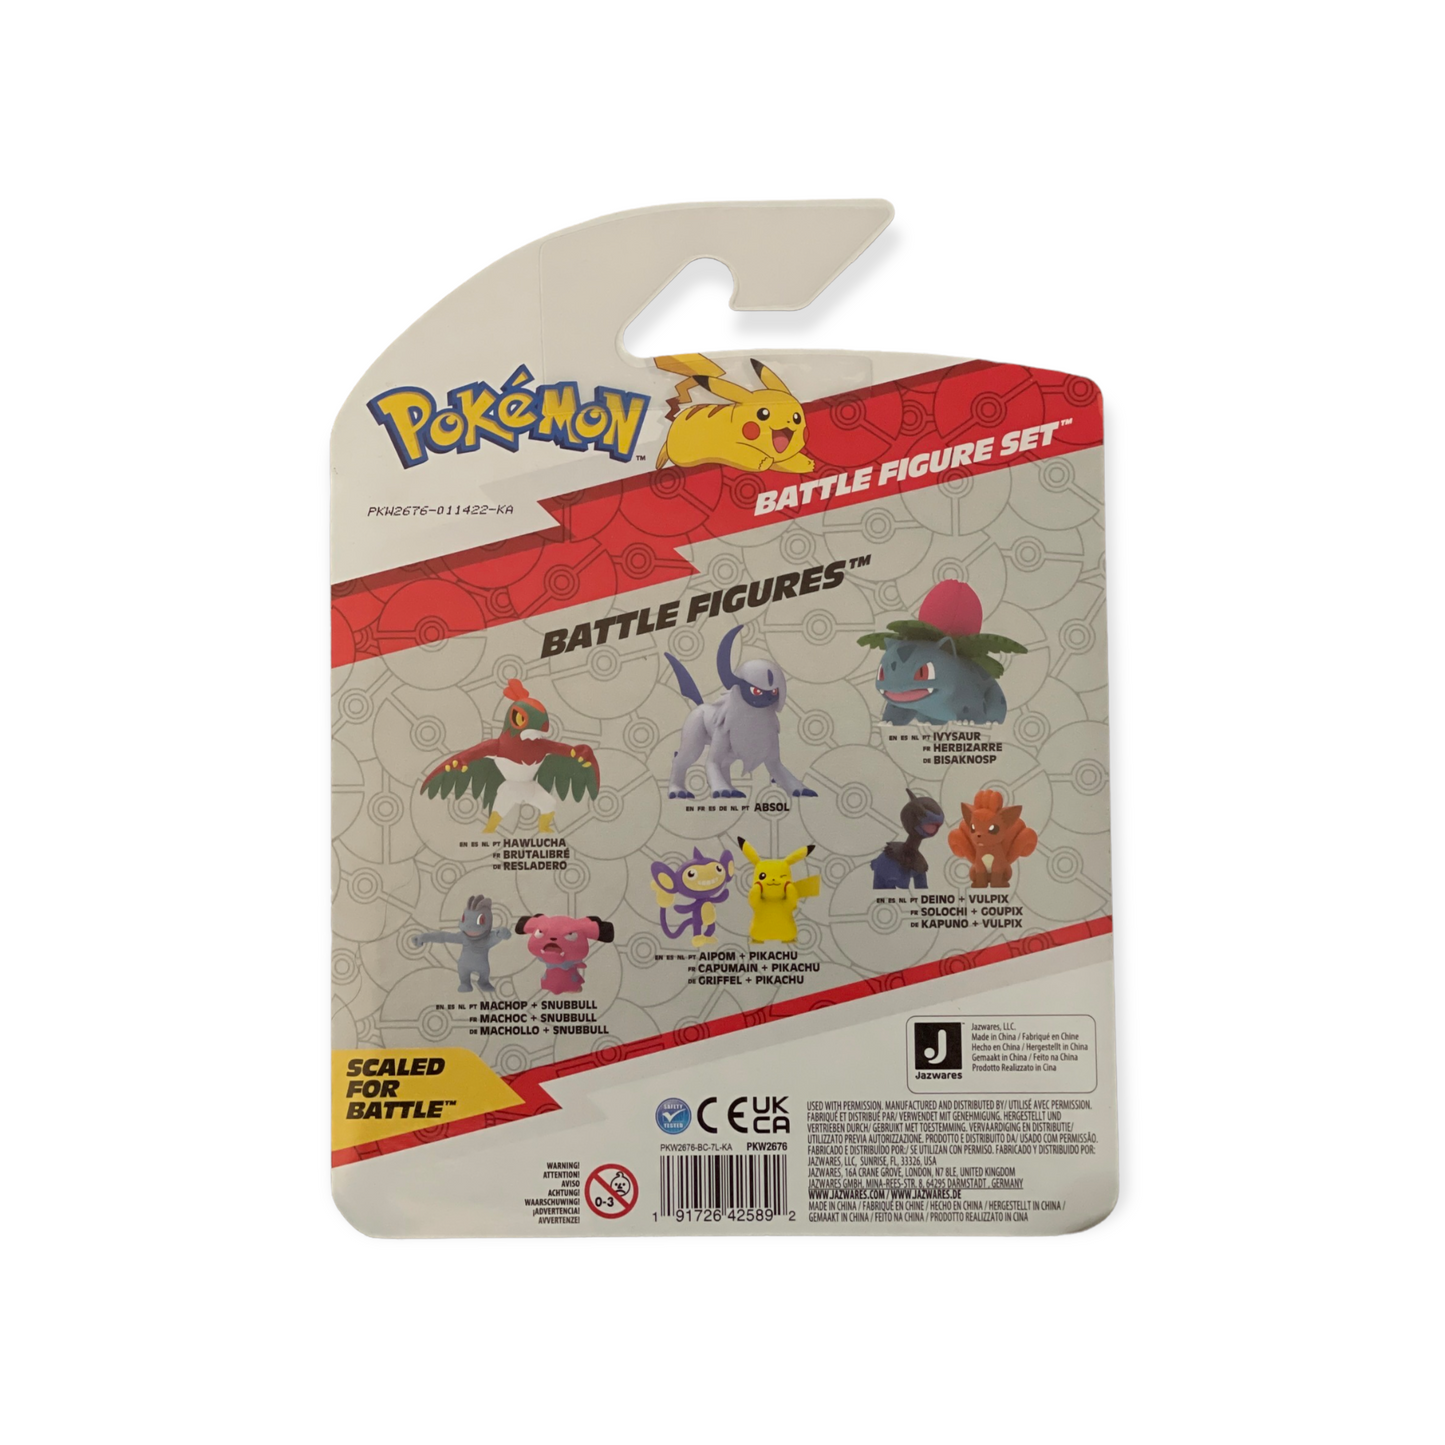 Pokémon Battle Figure Set: Pikachu, Mudkip, Boltund